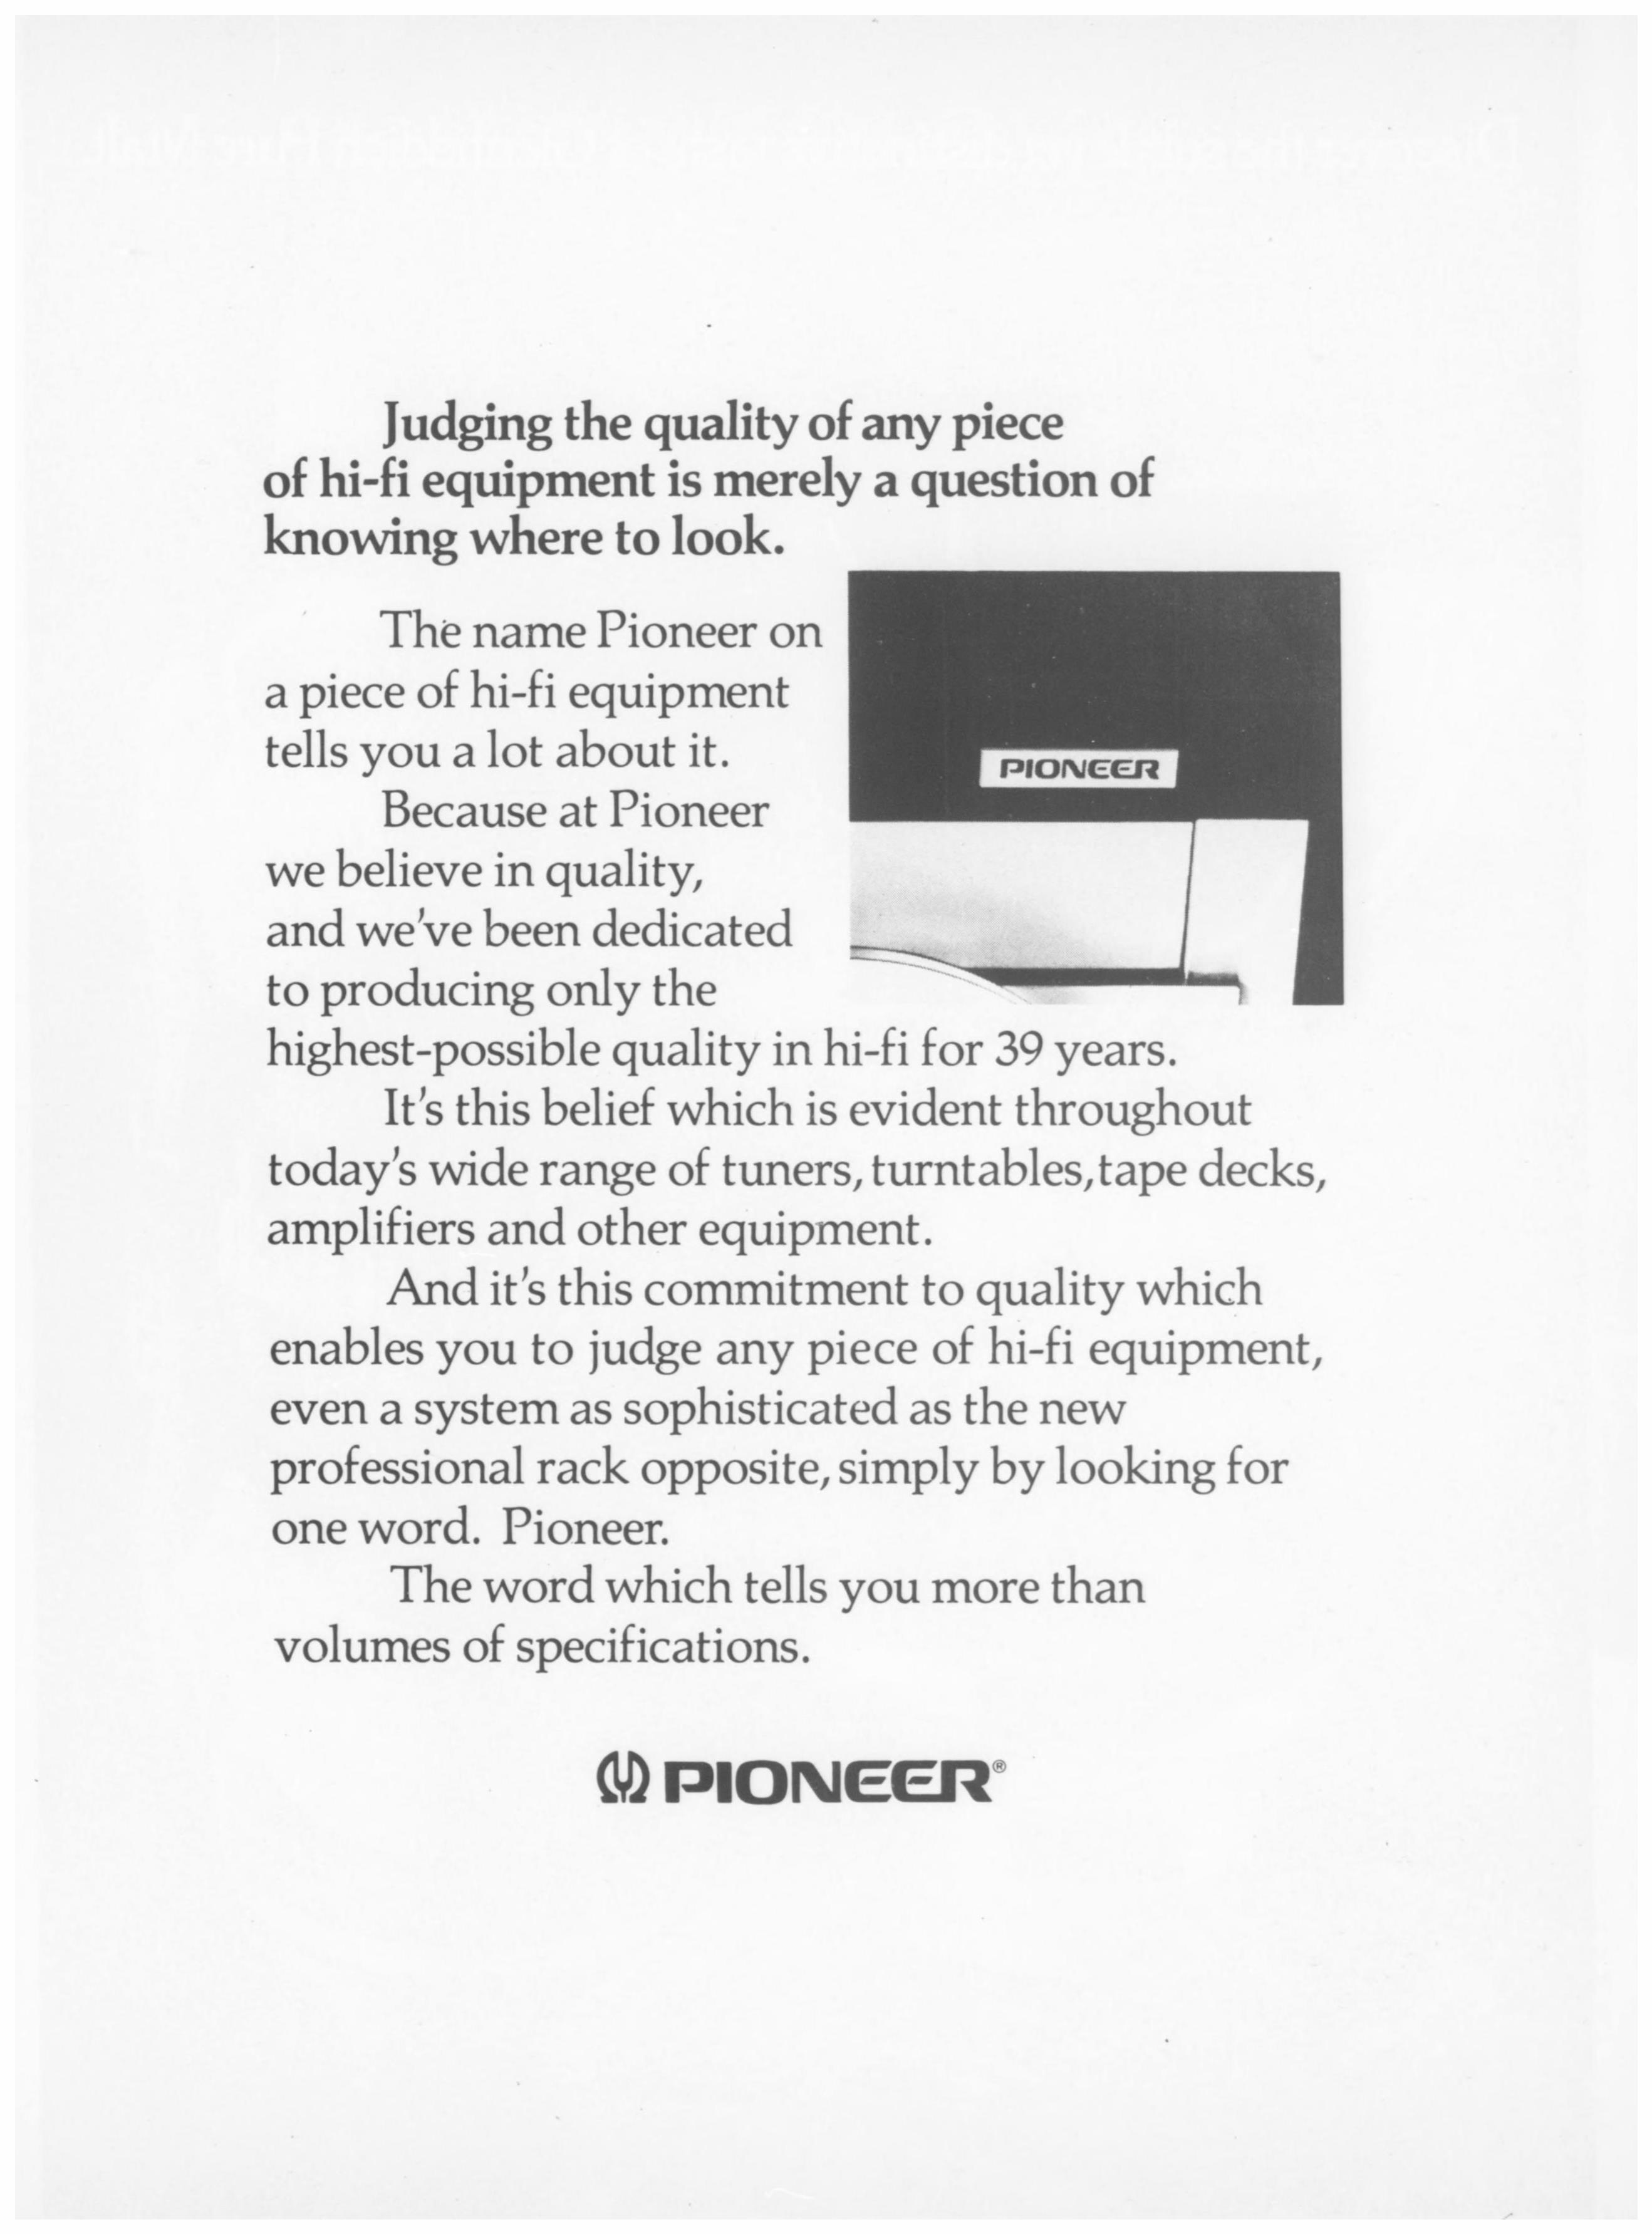 Pioneer 1977 64.jpg